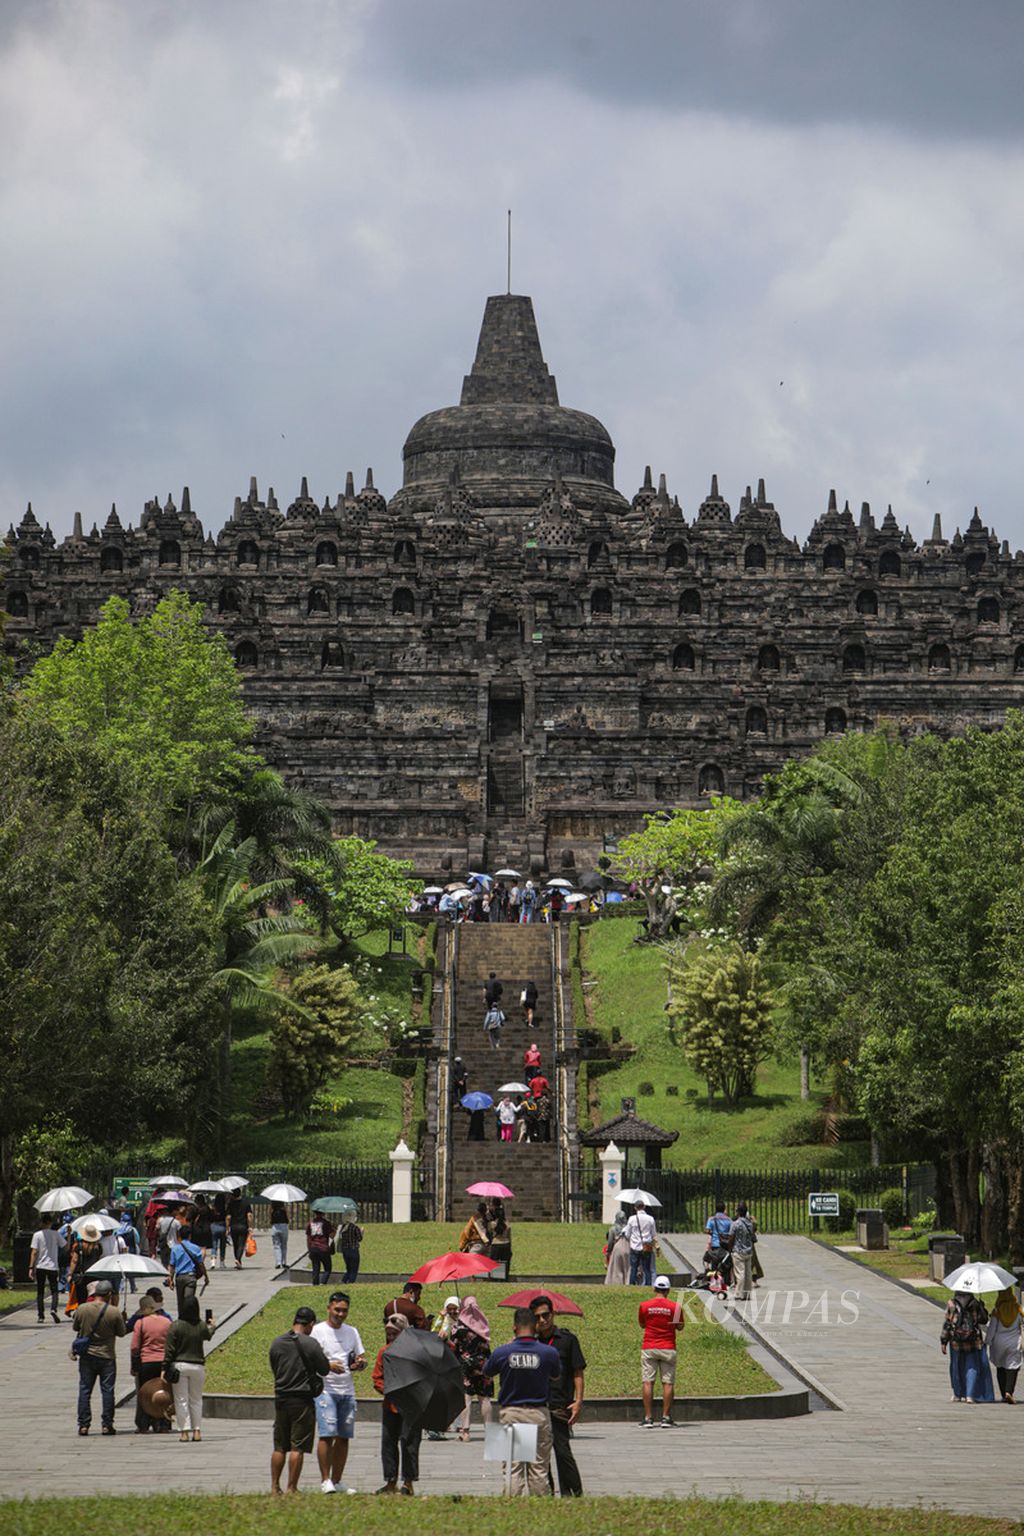 Wisatawan berkunjung dan melihat kemegahan Candi Borobudur di Magelang, Jawa Tengah, Sabtu (12/11/2022). Jumlah wisatawan di Candi Borobudur dibatasi hanya 1.200 setiap hari. Hal ini sebagai upaya pelestarian bangunan candi dengan pembatasan pengunjung.